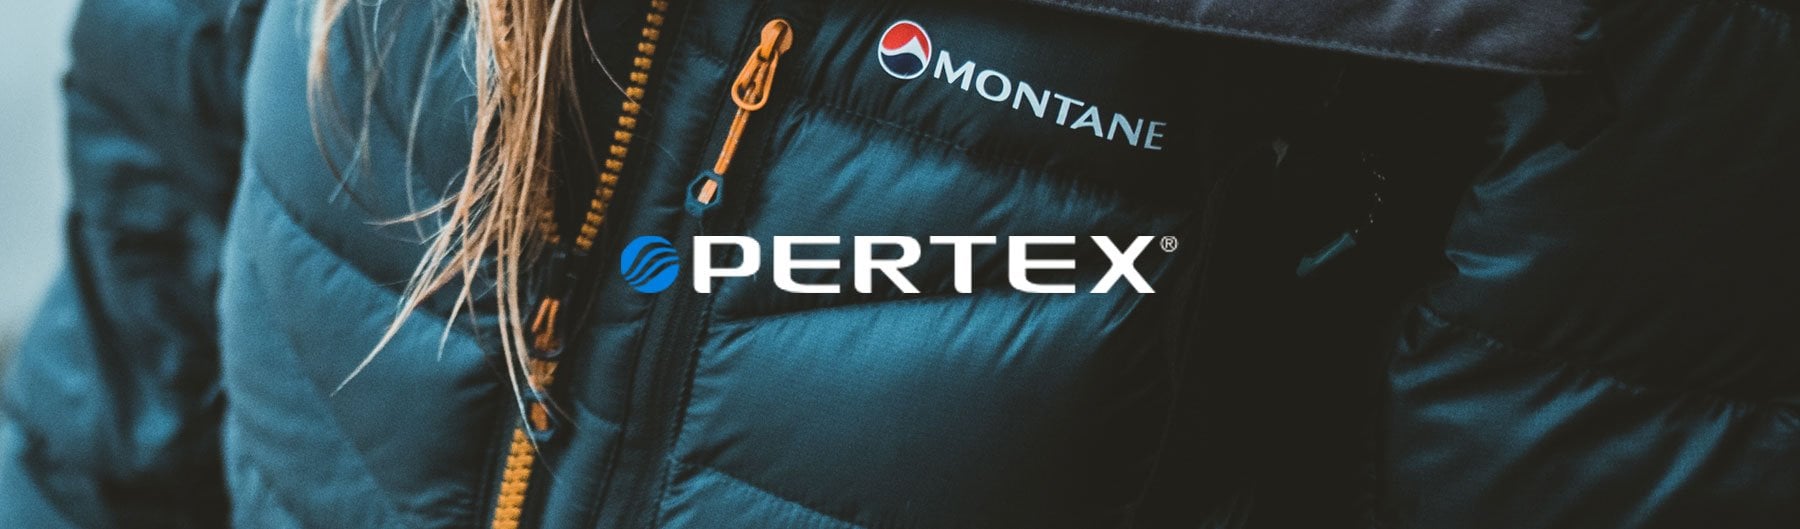 Компания Montane использует в пошиве своей продукции ткани Pertex